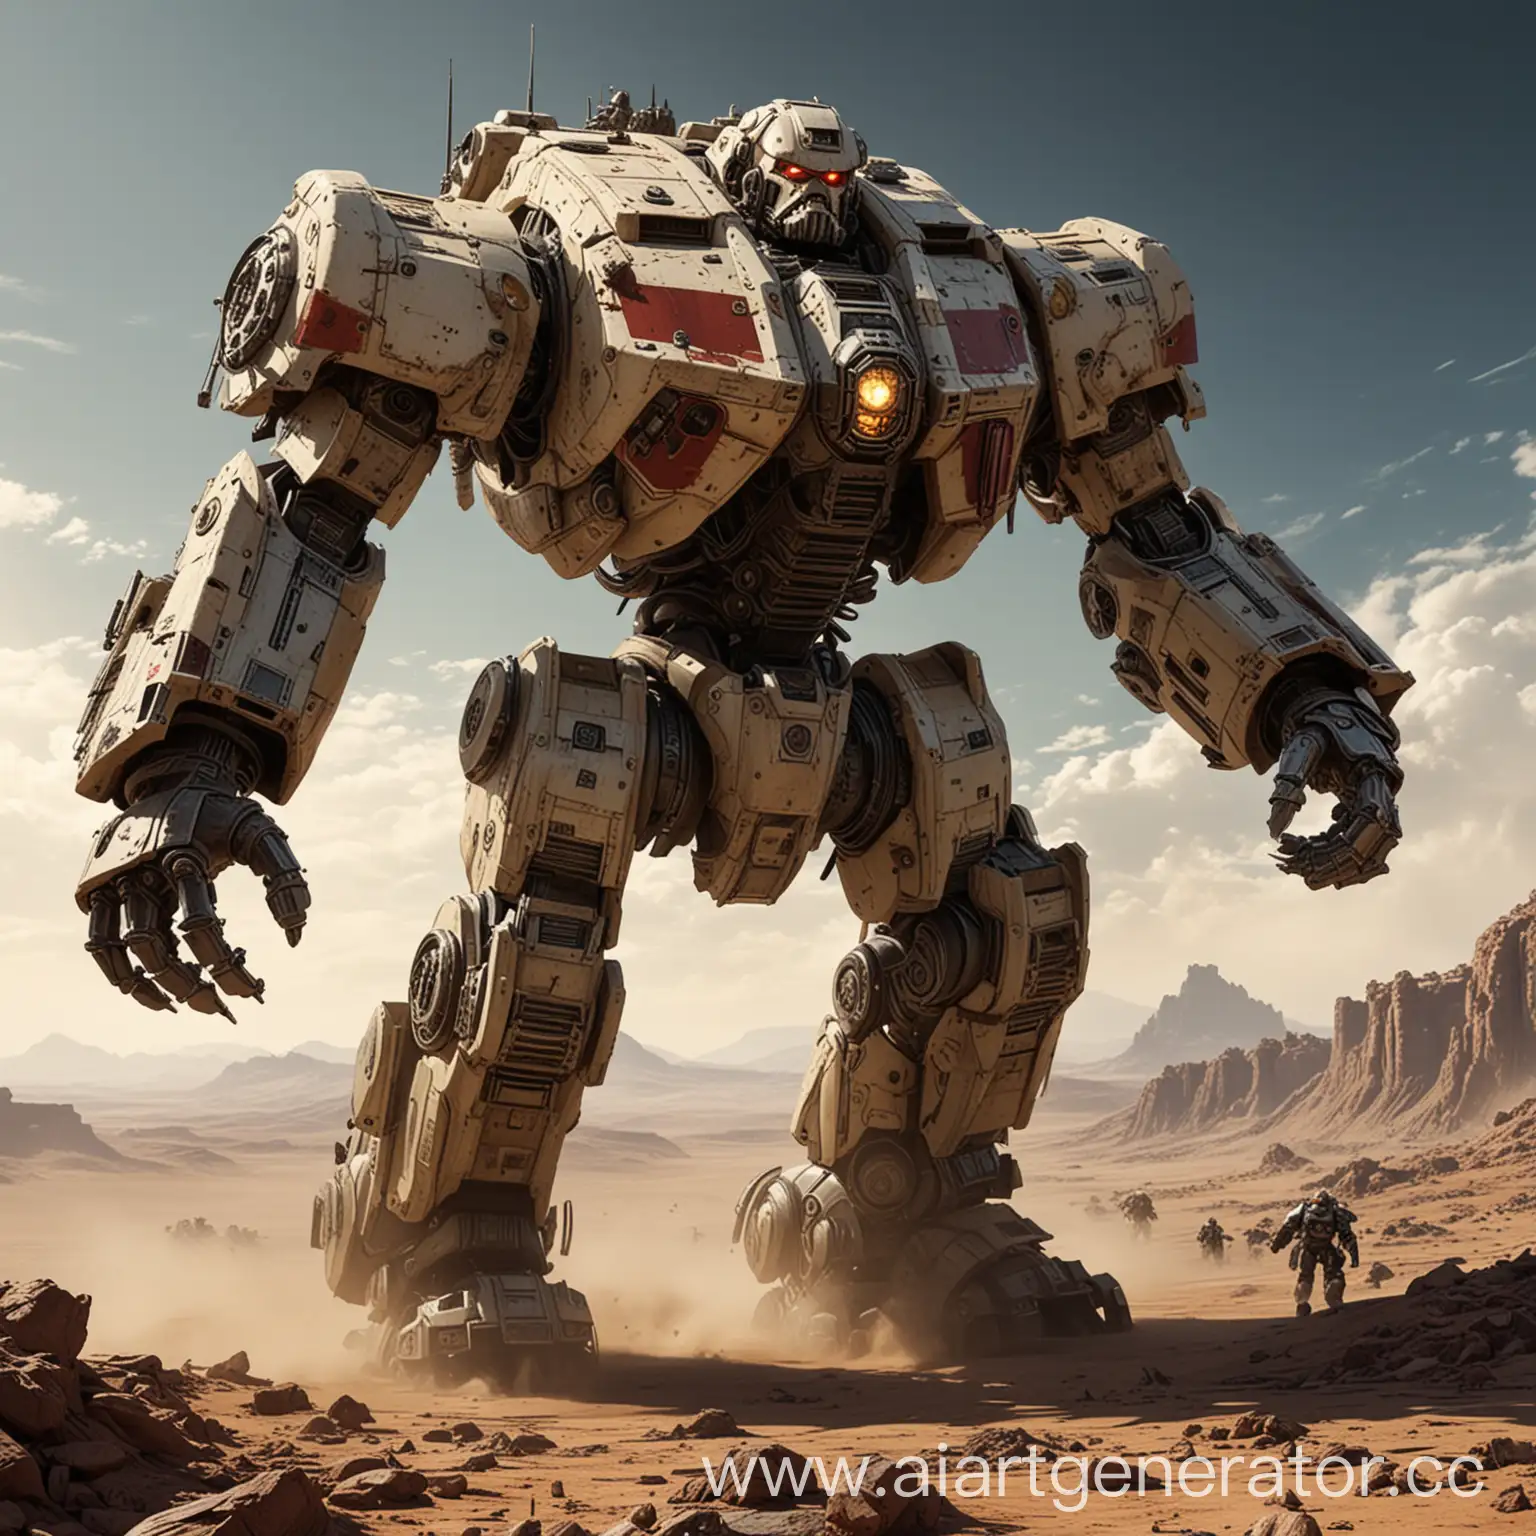 Massive-Imperial-Titan-Robot-Stomping-Across-Lifeless-Planet-in-Sunny-War-Scene